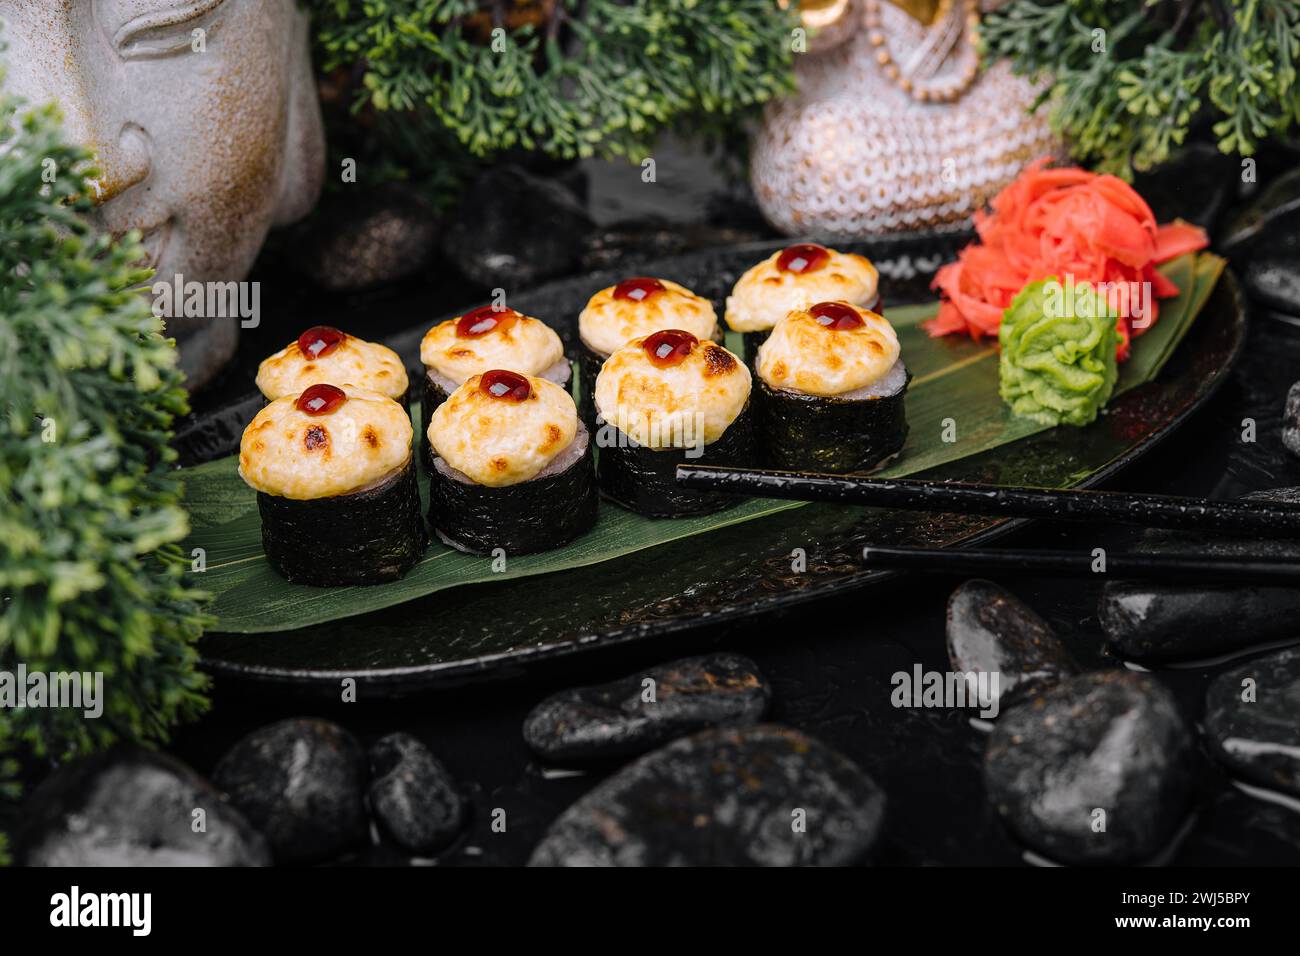 Servi sushi chaud roulé dans des feuilles de nori avec gingembre et wasabi sur une assiette en pierre noire Banque D'Images